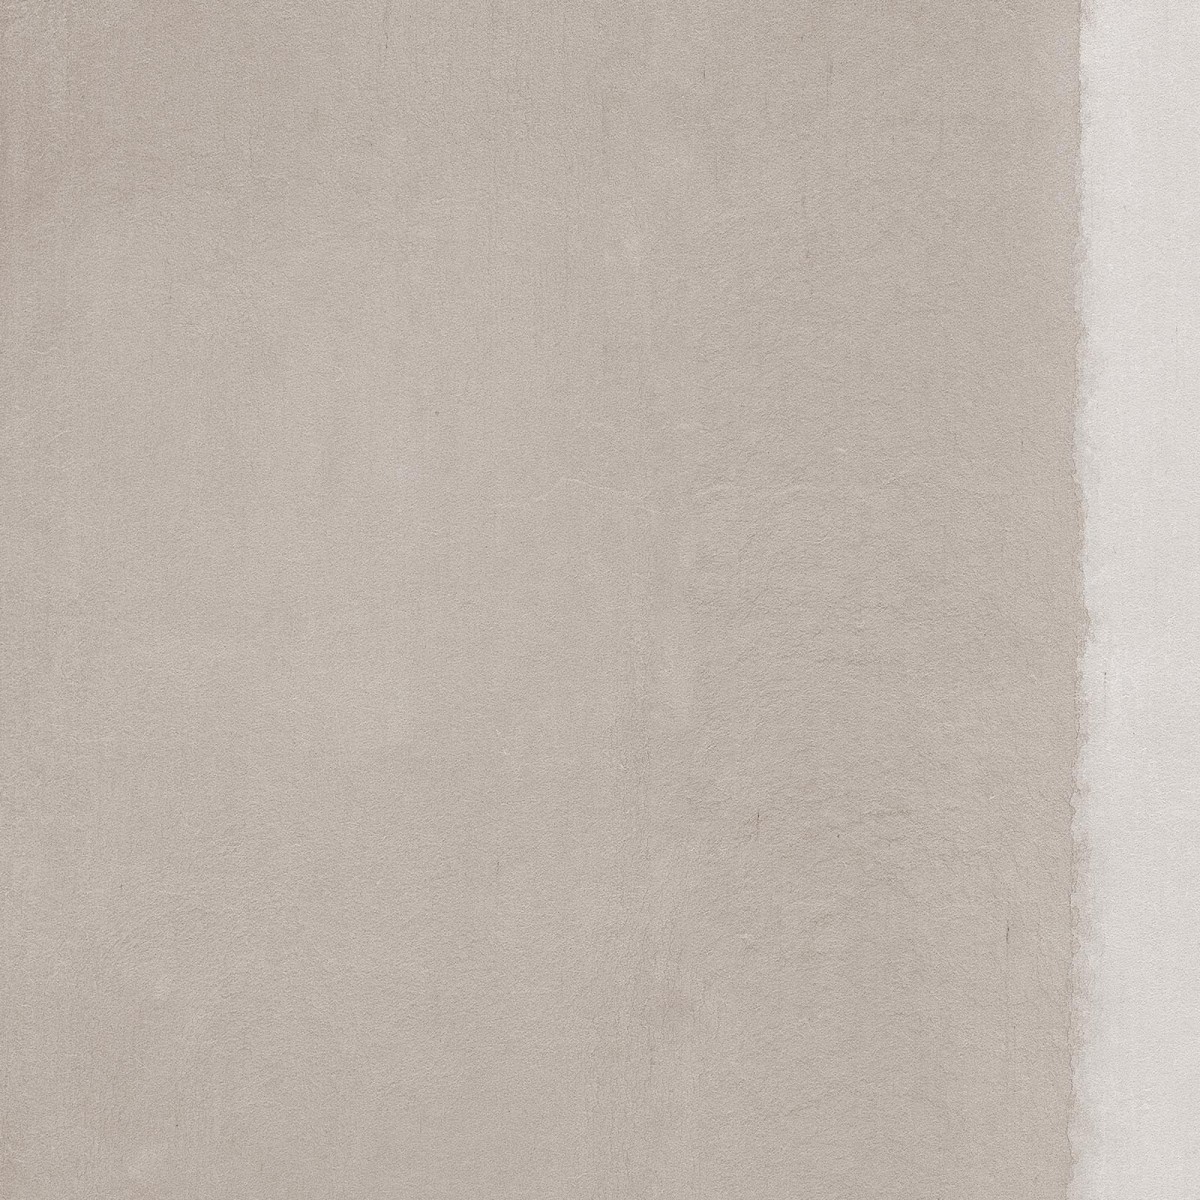 Tapet designer Washi, Grey by Piet Boon, NLXL, 4.9mp / rola, Tapet Exclusivist 